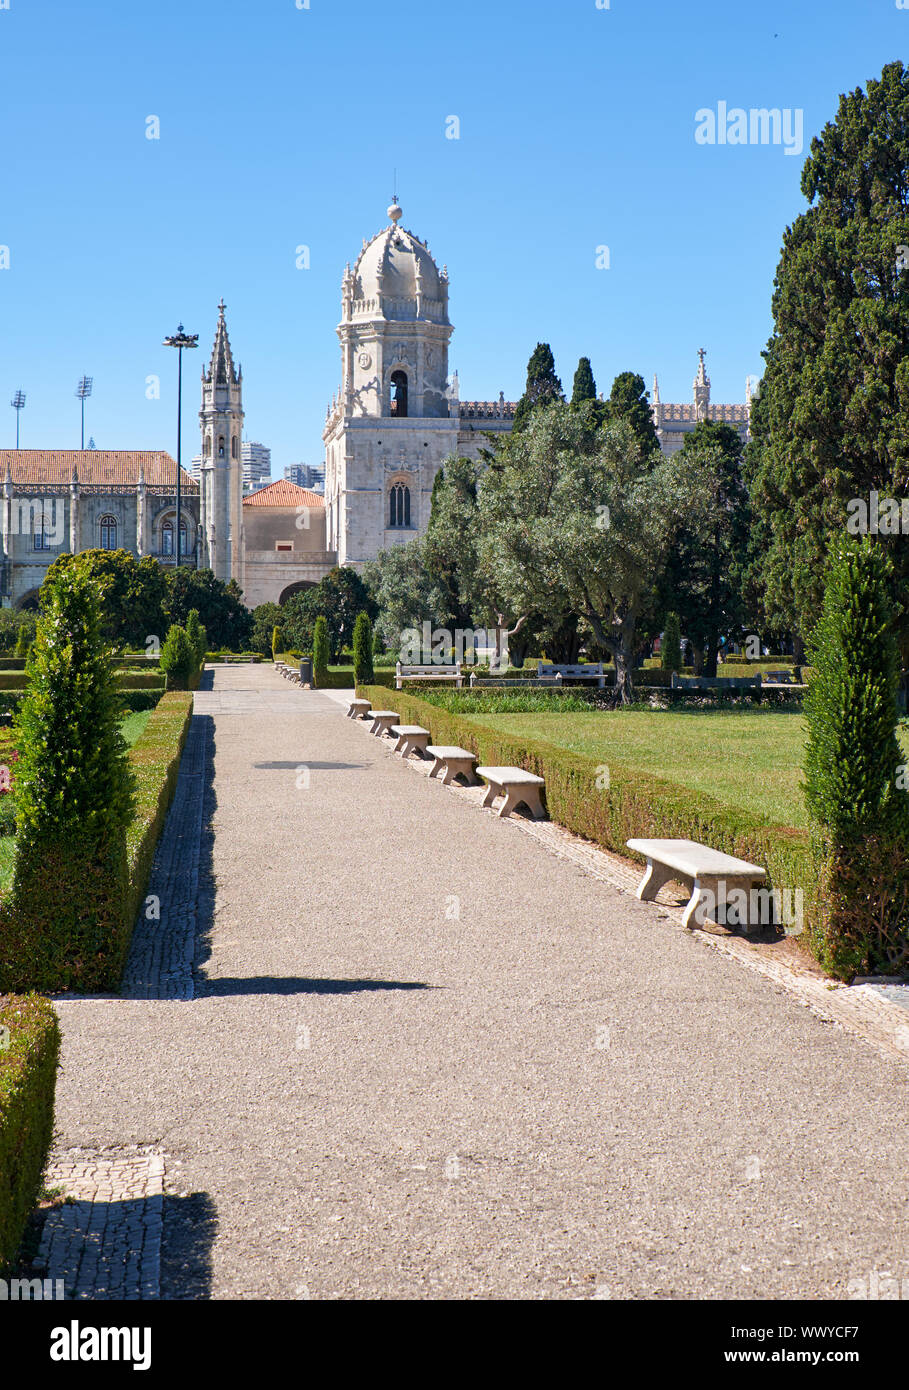 Le point de vue de l'église de Santa Maria dans le jardin de l'Empire Square. Lisbonne, Portugal Banque D'Images